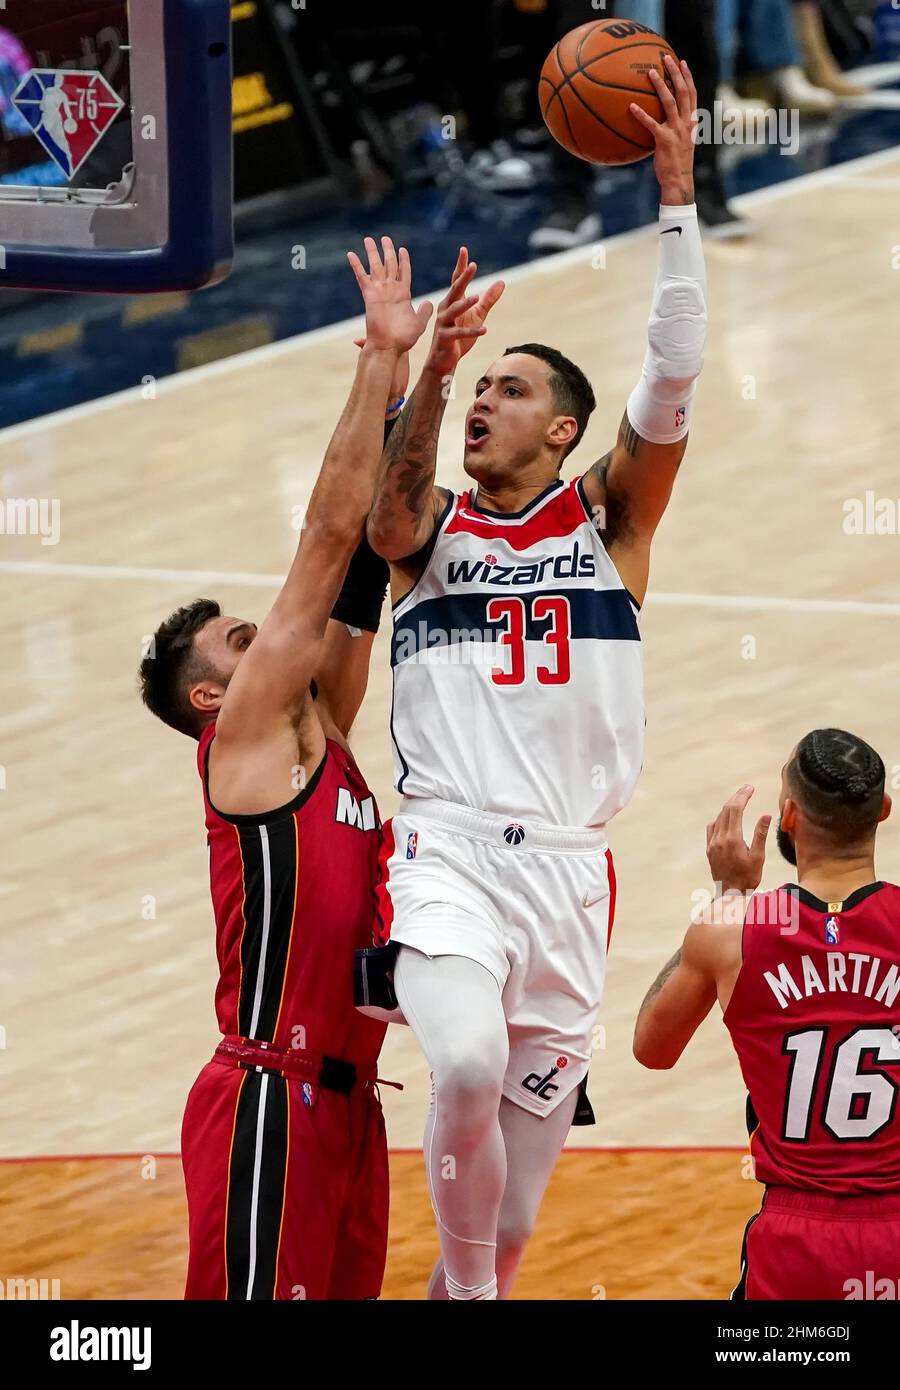 WASHINGTON, DC - FÉVRIER 07: Le joueur de Washington Wizards Kyle Kuzma  (33) va pour une mise à pied lors d'un match NBA entre les Washington  Wizards et la chaleur de Miami,